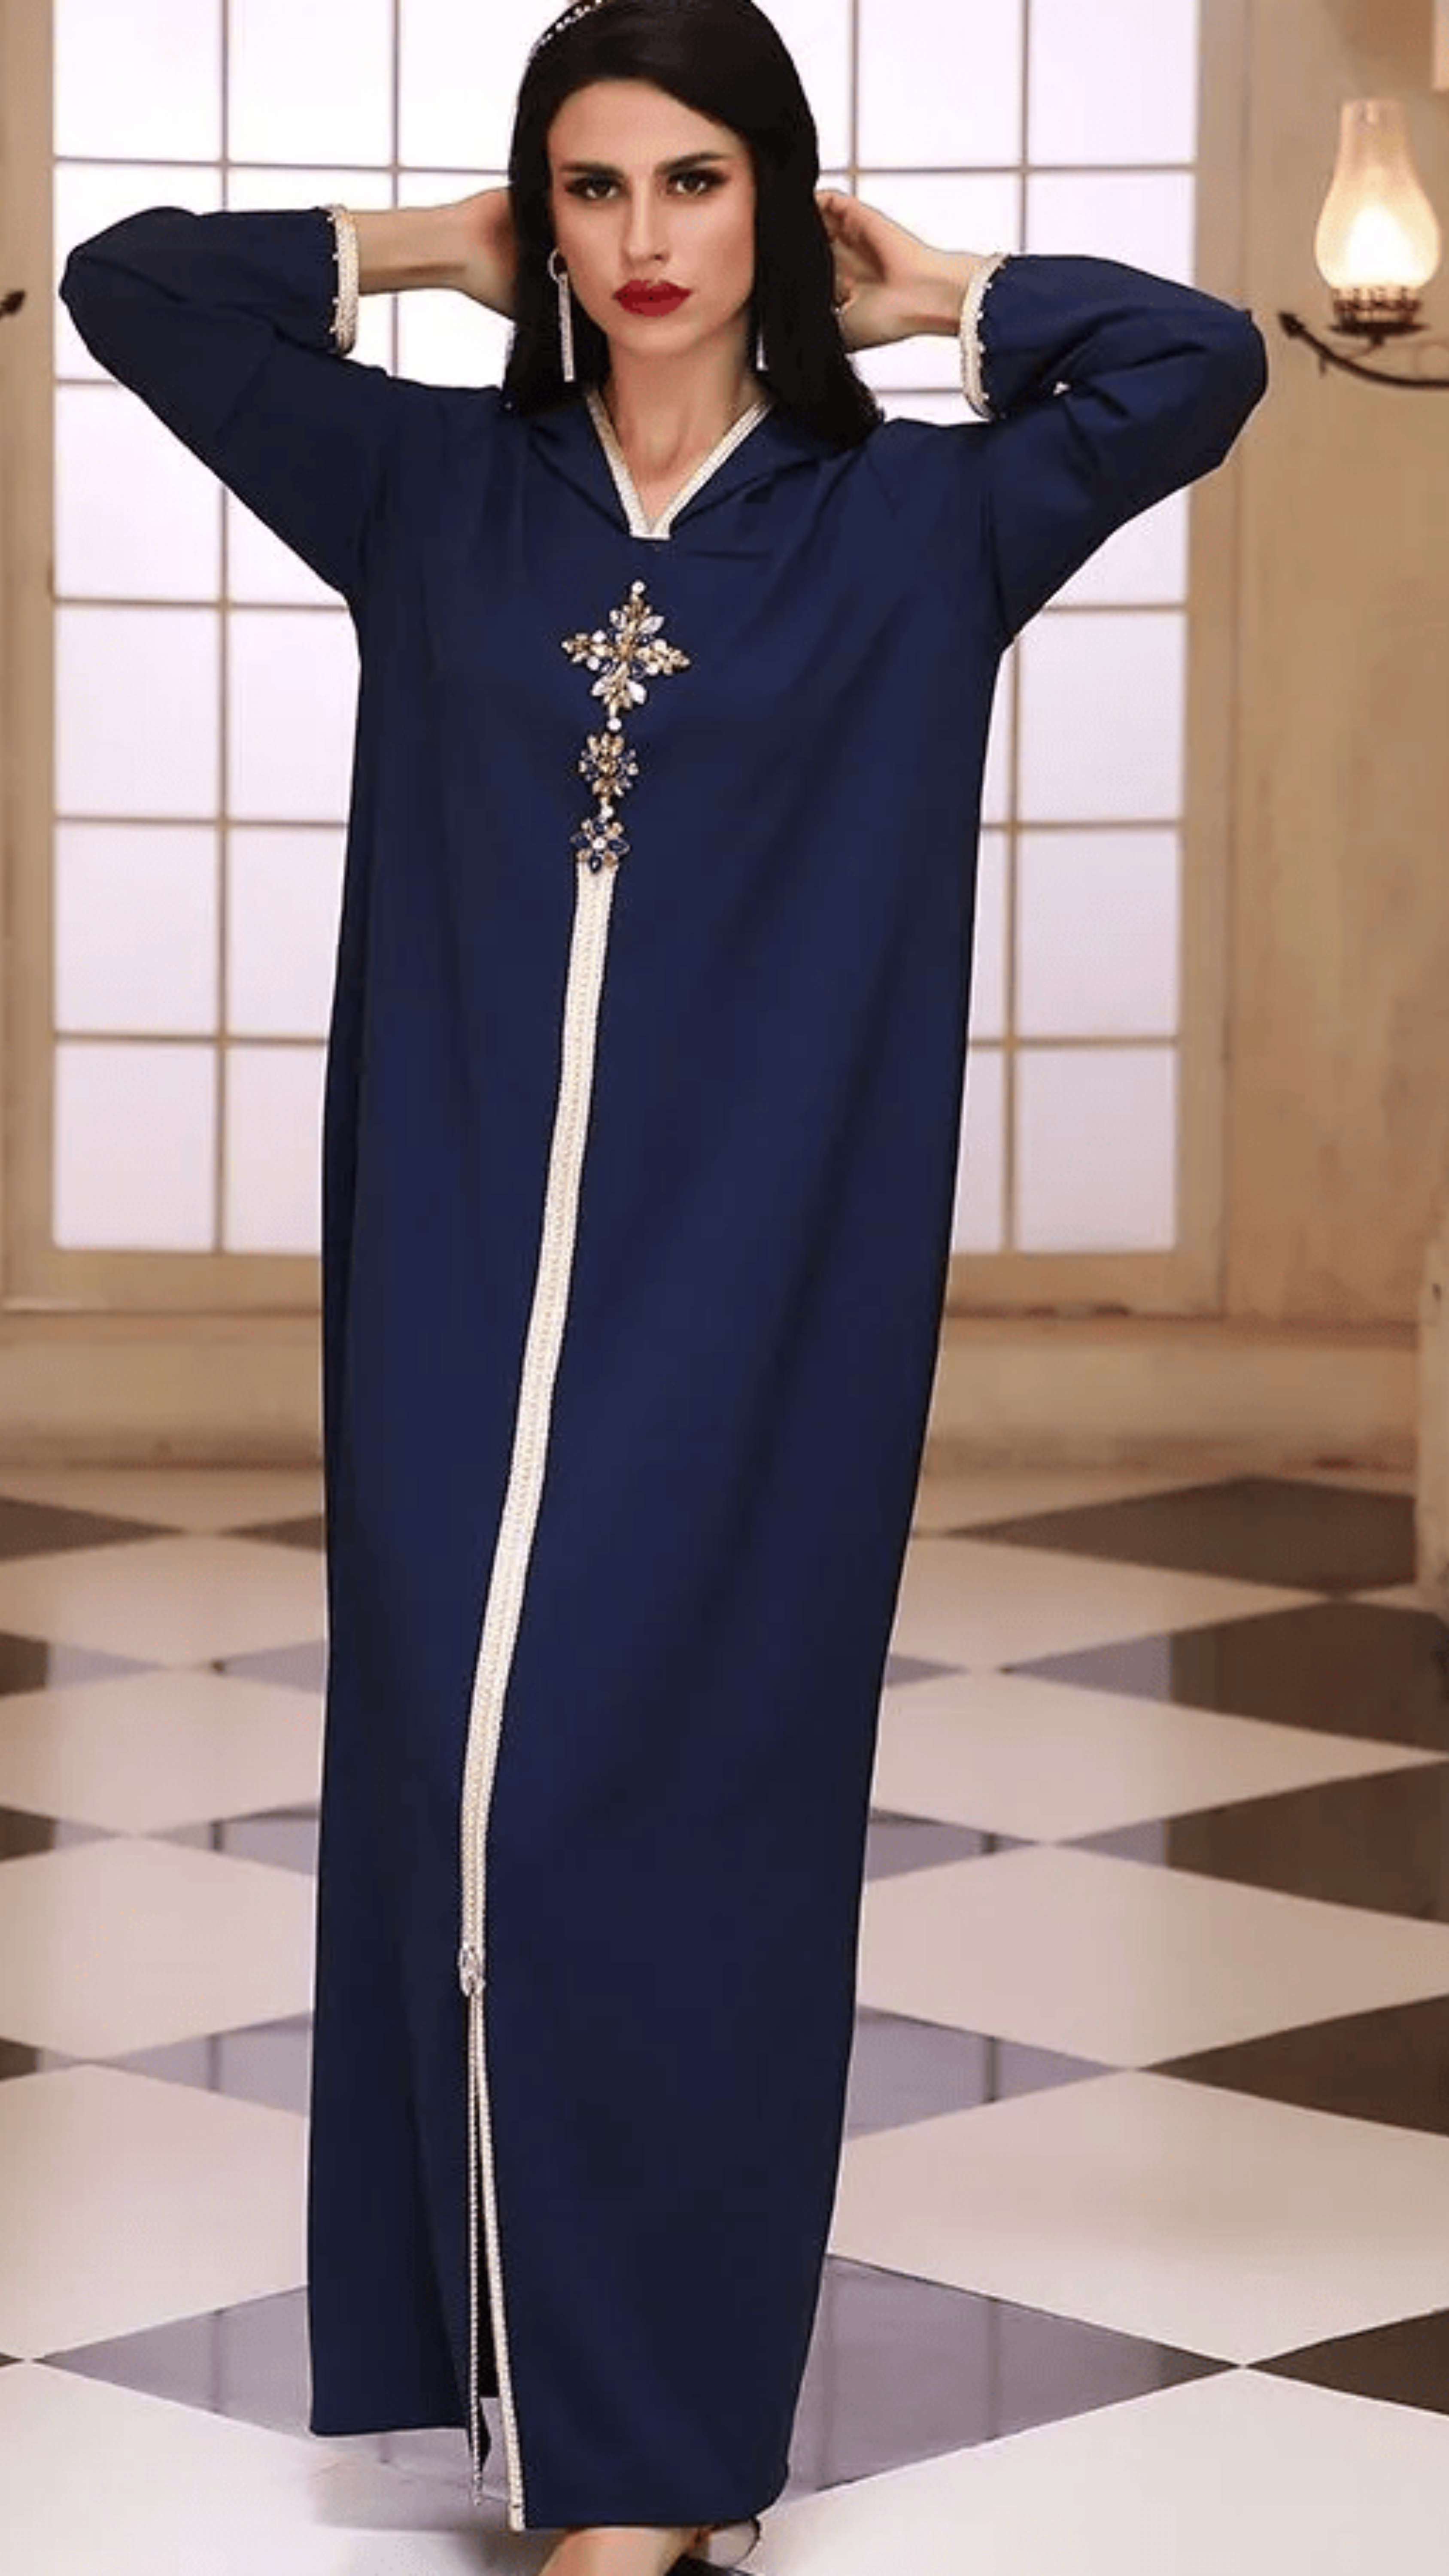 a blue dress with a zipper